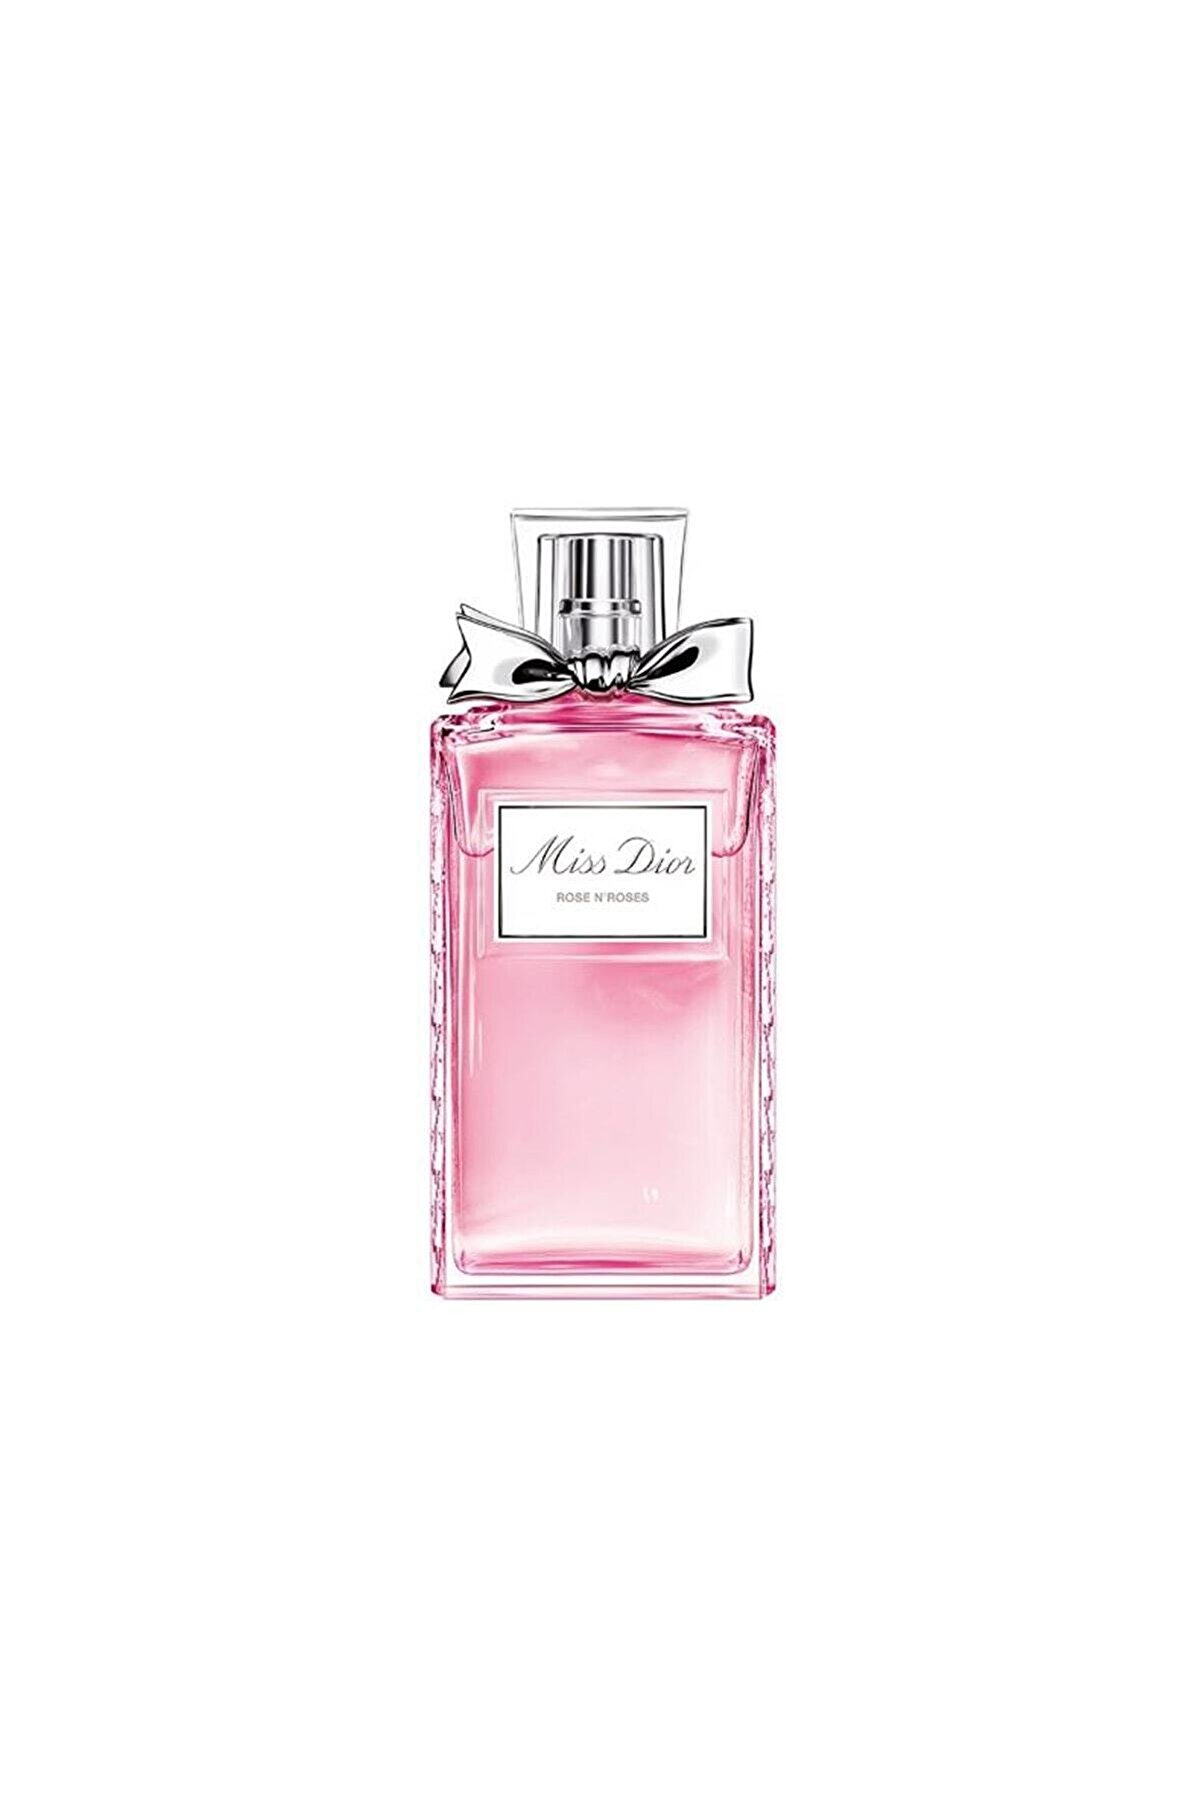 Dior Miss Dior Rose N'roses EDT 100 ml Kadın Parfüm